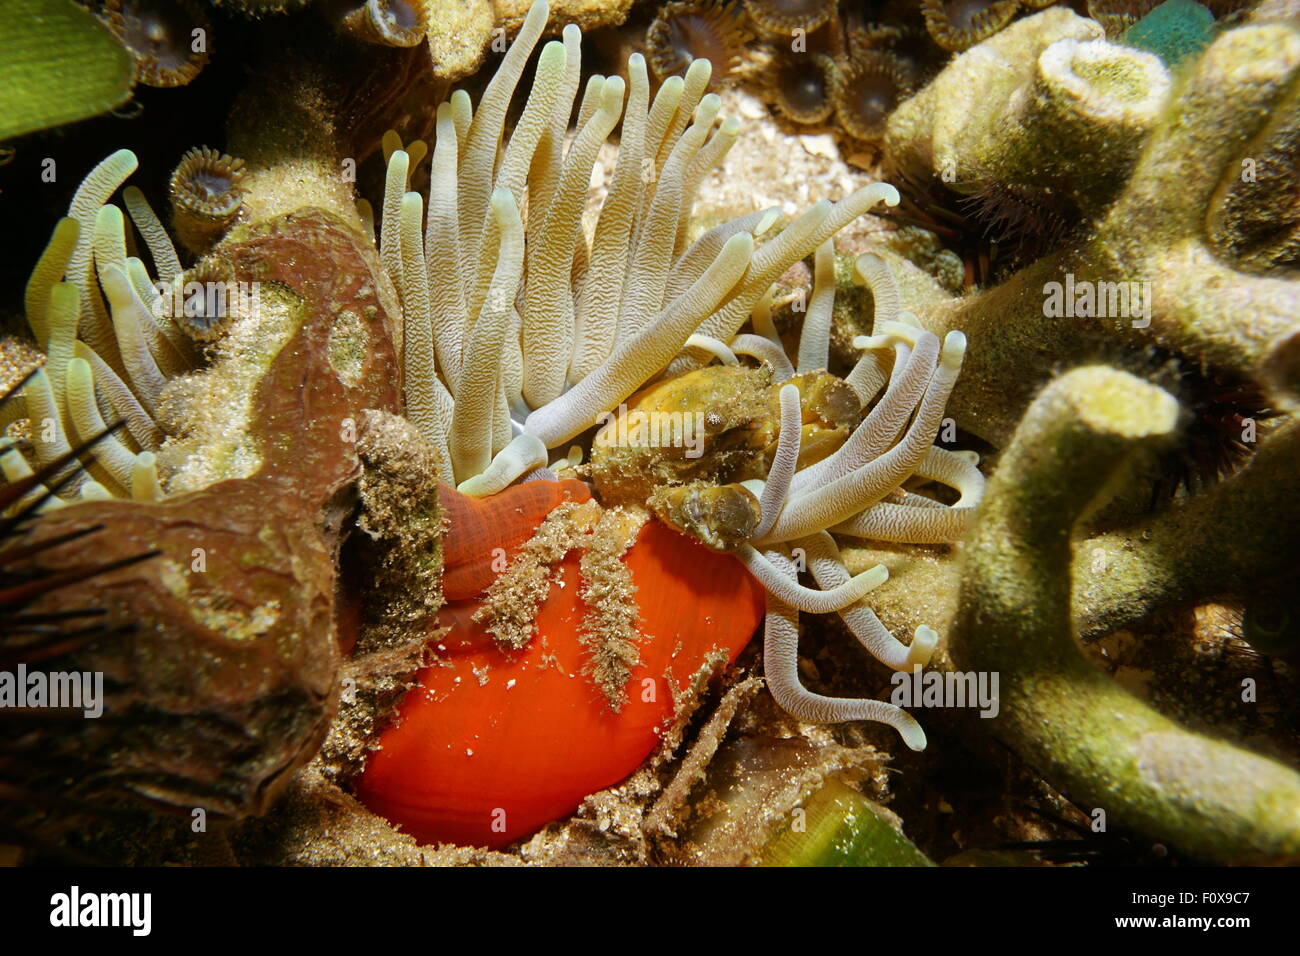 Eine grüne festhalten Krabbe unter Wasser auf eine riesige Anemone, Karibik, Costa Rica, Mittelamerika Stockfoto